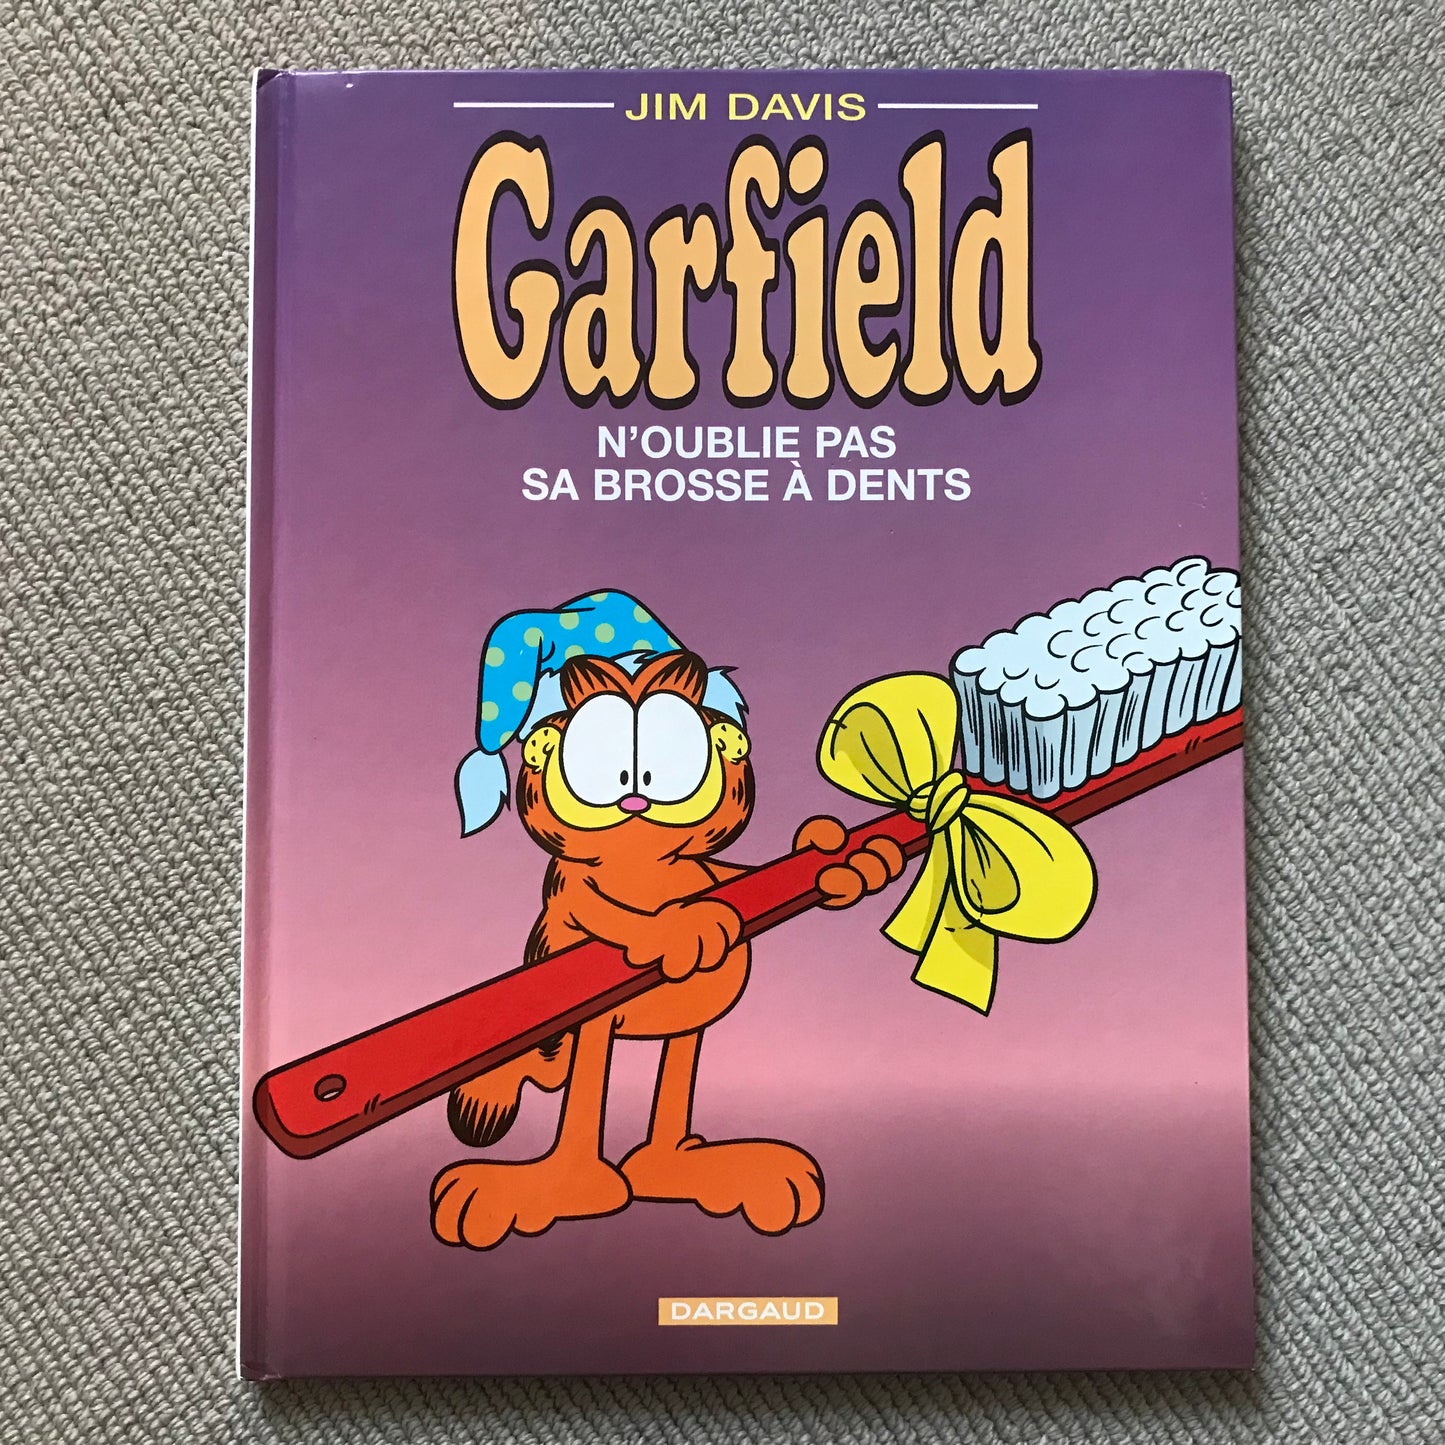 Garfield T22, N’oublie pas sa brosse à dents - Jim Davis